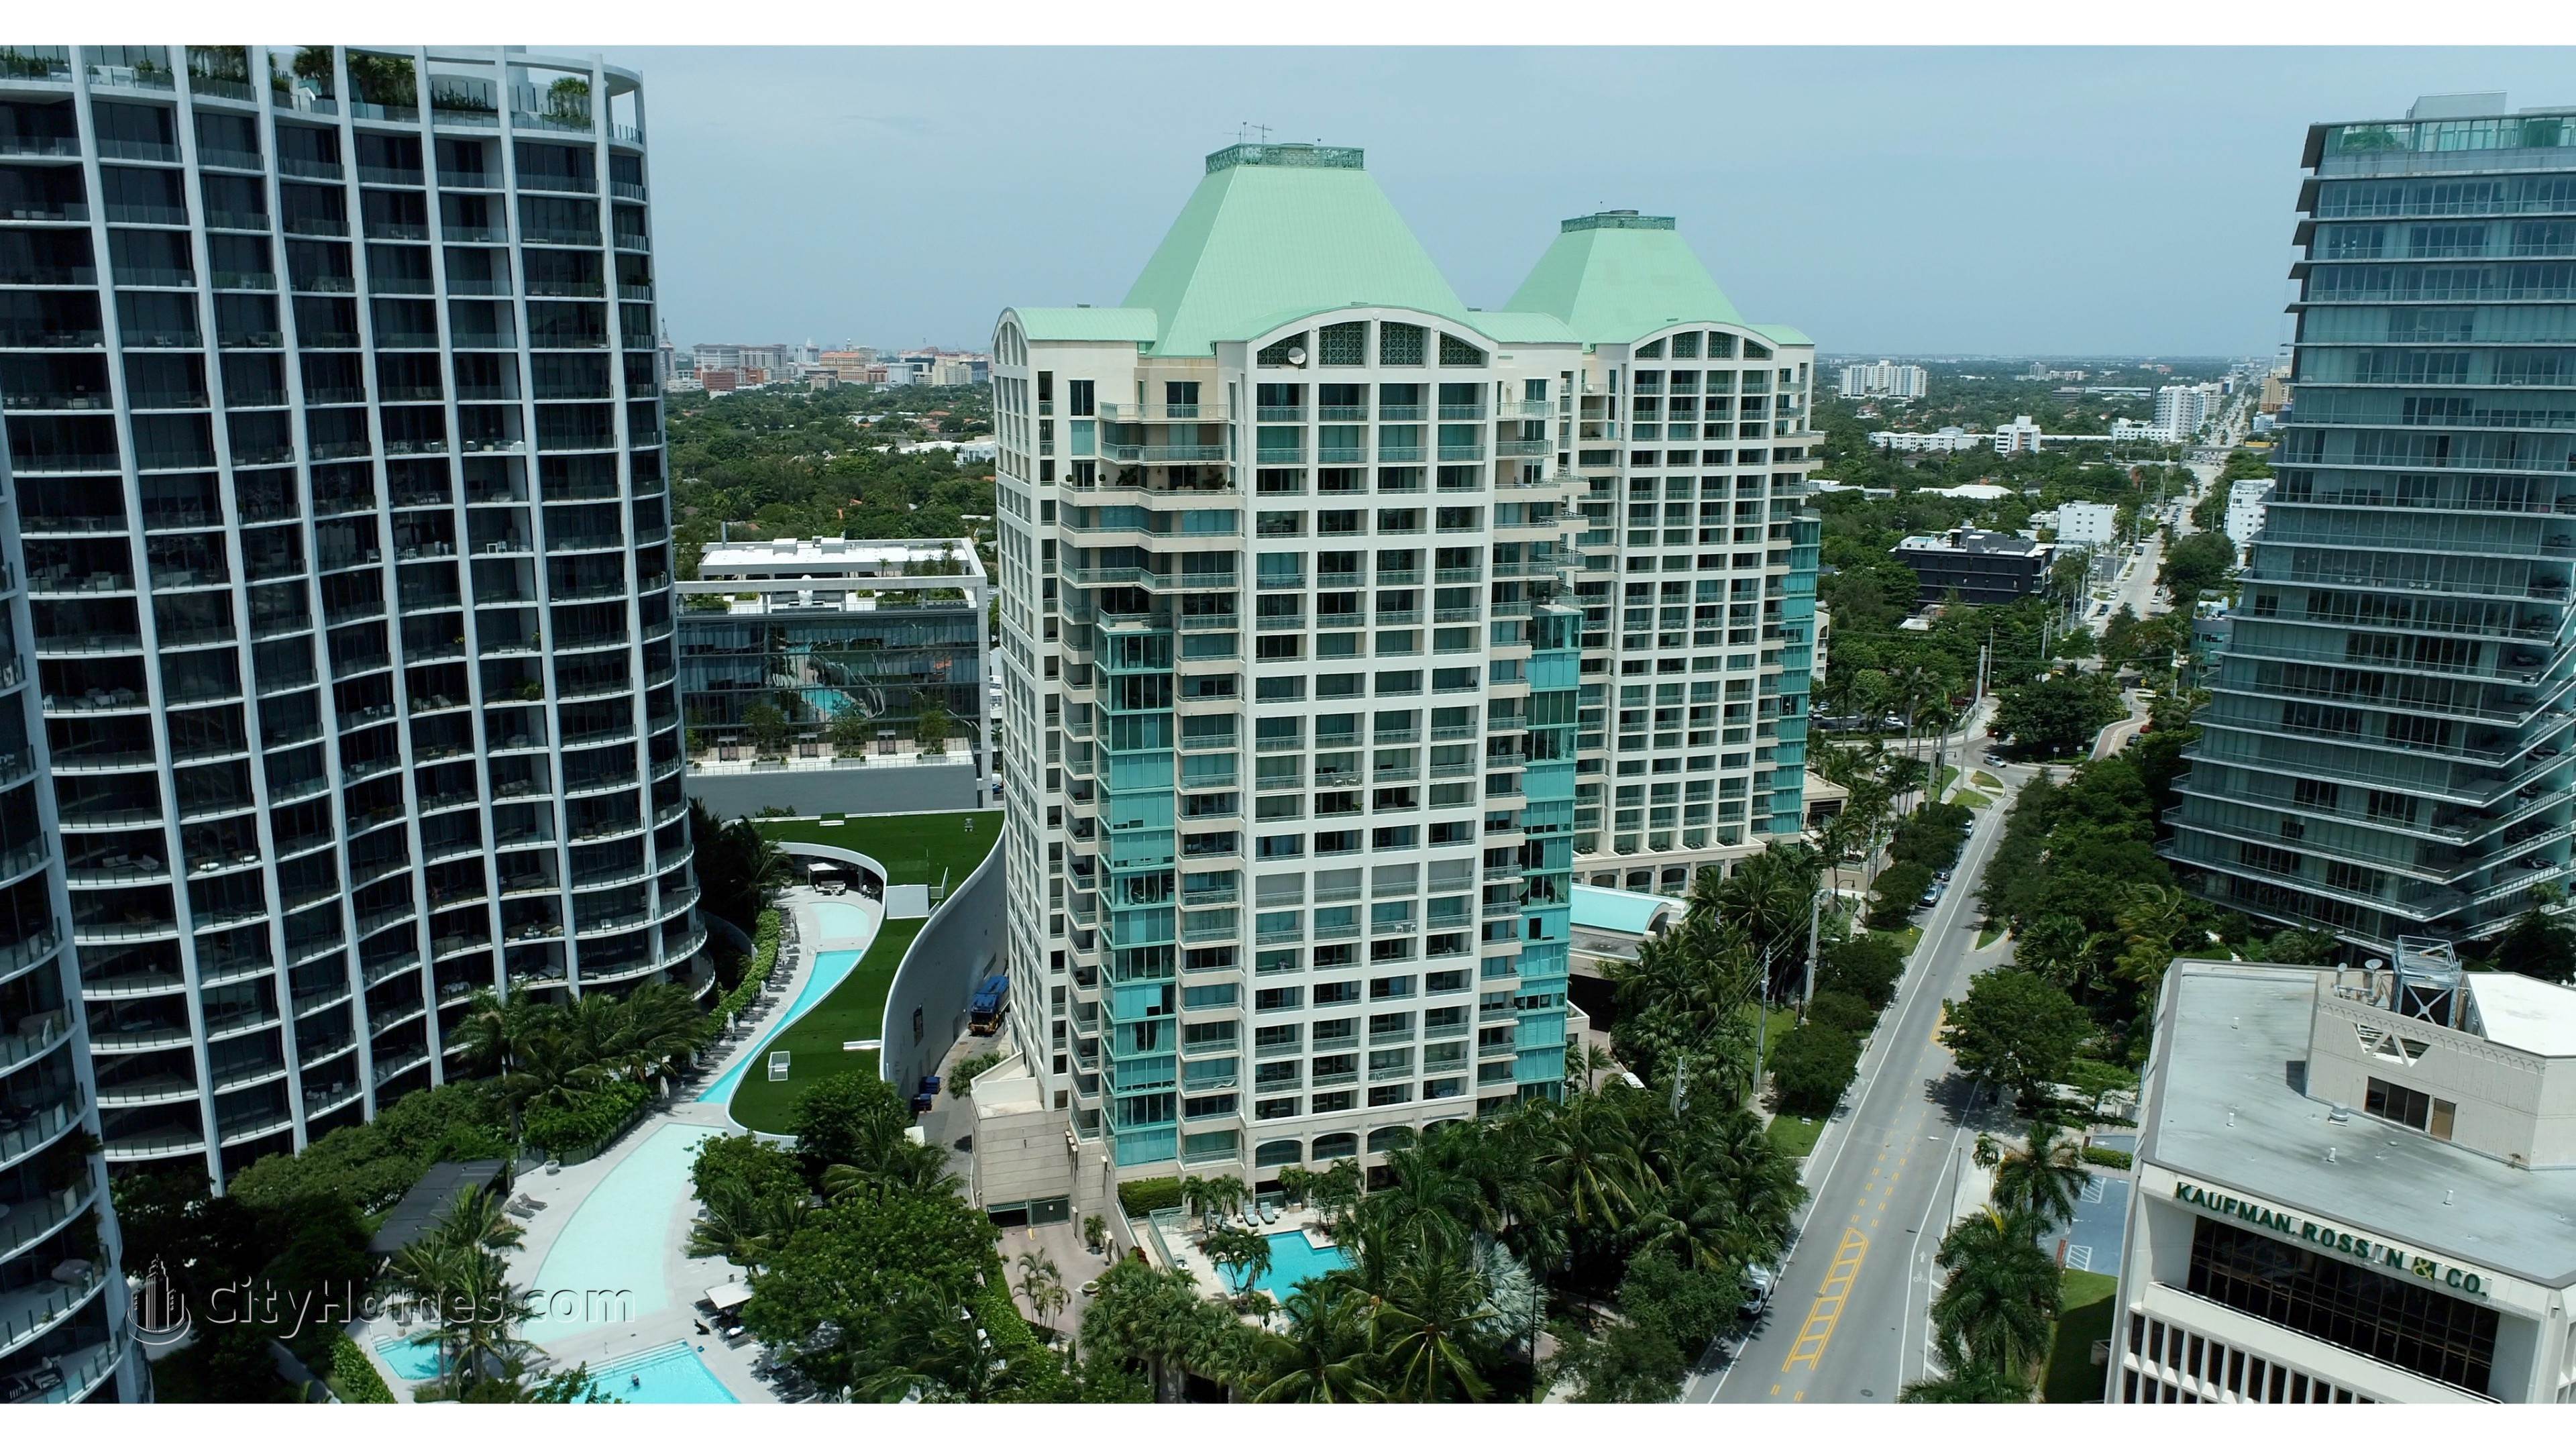 3. Ritz-Carlton Coconut Grove building at 3300 And 3350 SW 27th Avenue, Miami, FL 33133